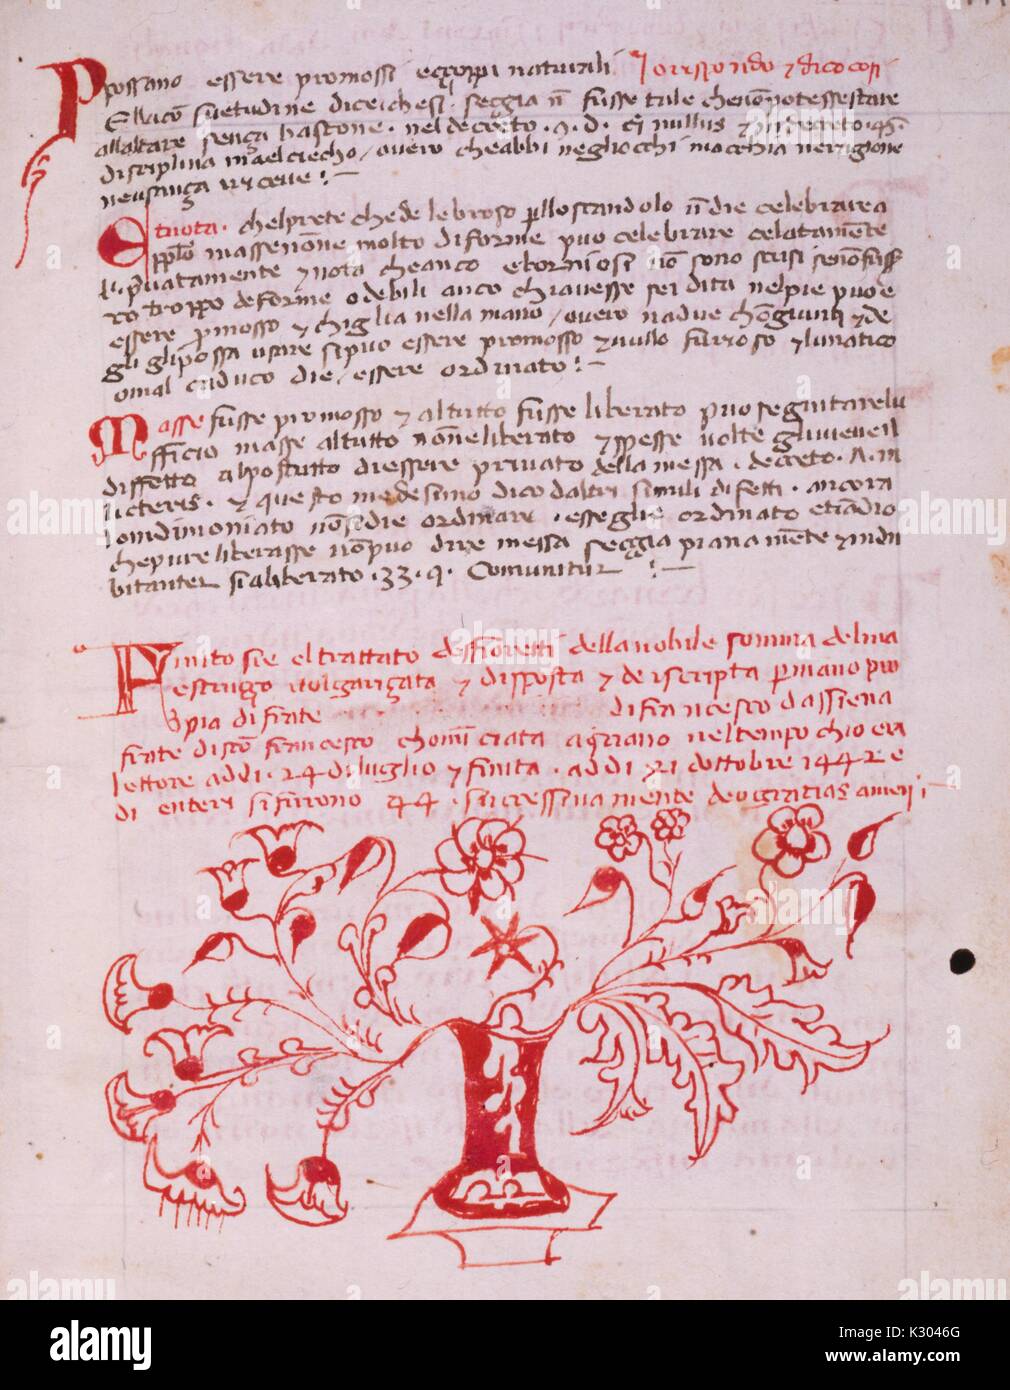 Manuscrit enluminé page illustrant le texte et un motif floral orné, d'un manuscrit italien du 15e siècle livre écrit à Sienne, 1450. Banque D'Images